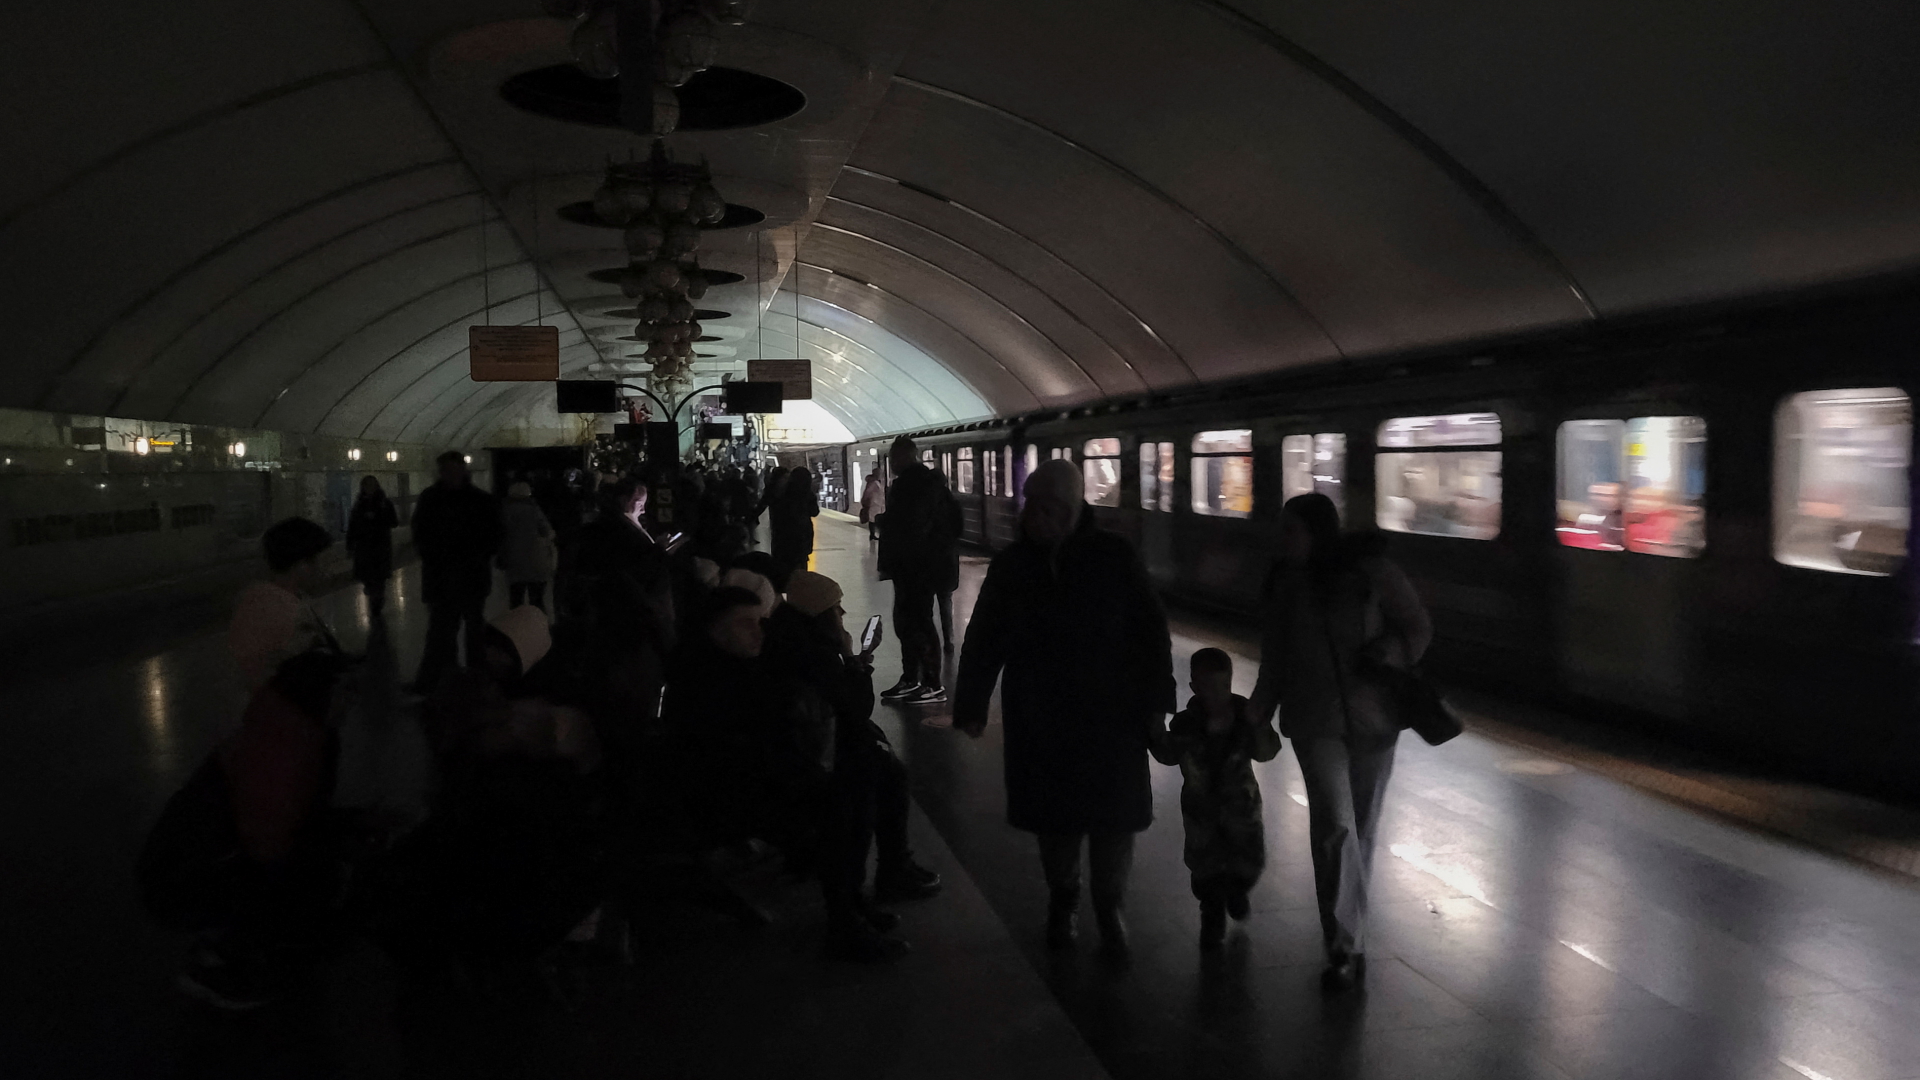 In Kiew suchen die Menschen Schutz in U-Bahnhöfen, in denen es wegen des Stromausfalls nur eine Notbeleuchtung gibt